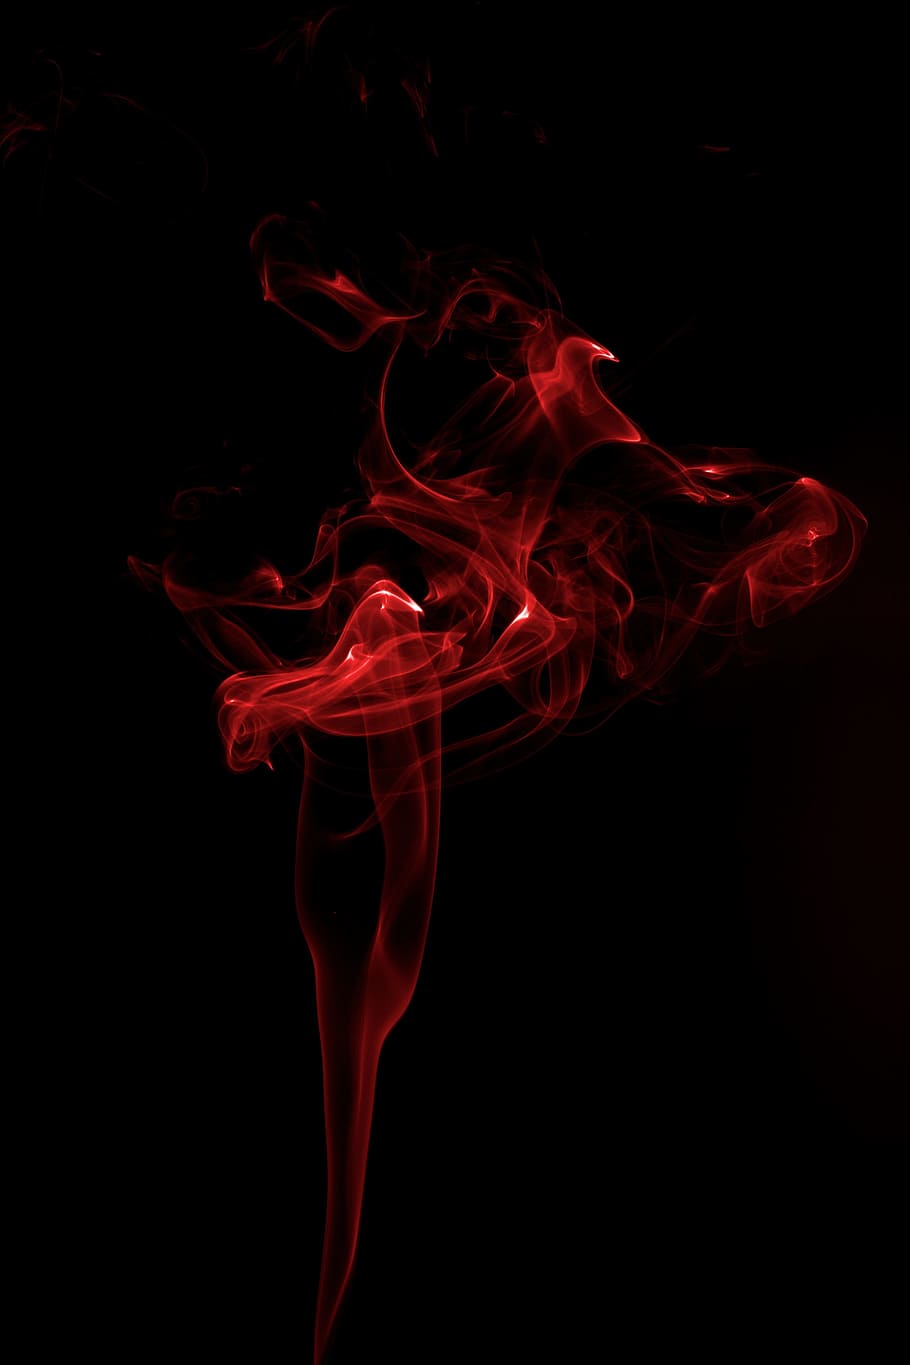 Humo, arte, rojo, humo - estructura física, fondo negro, abstracto, sin gente, líquido, tiro del estudio, movimiento